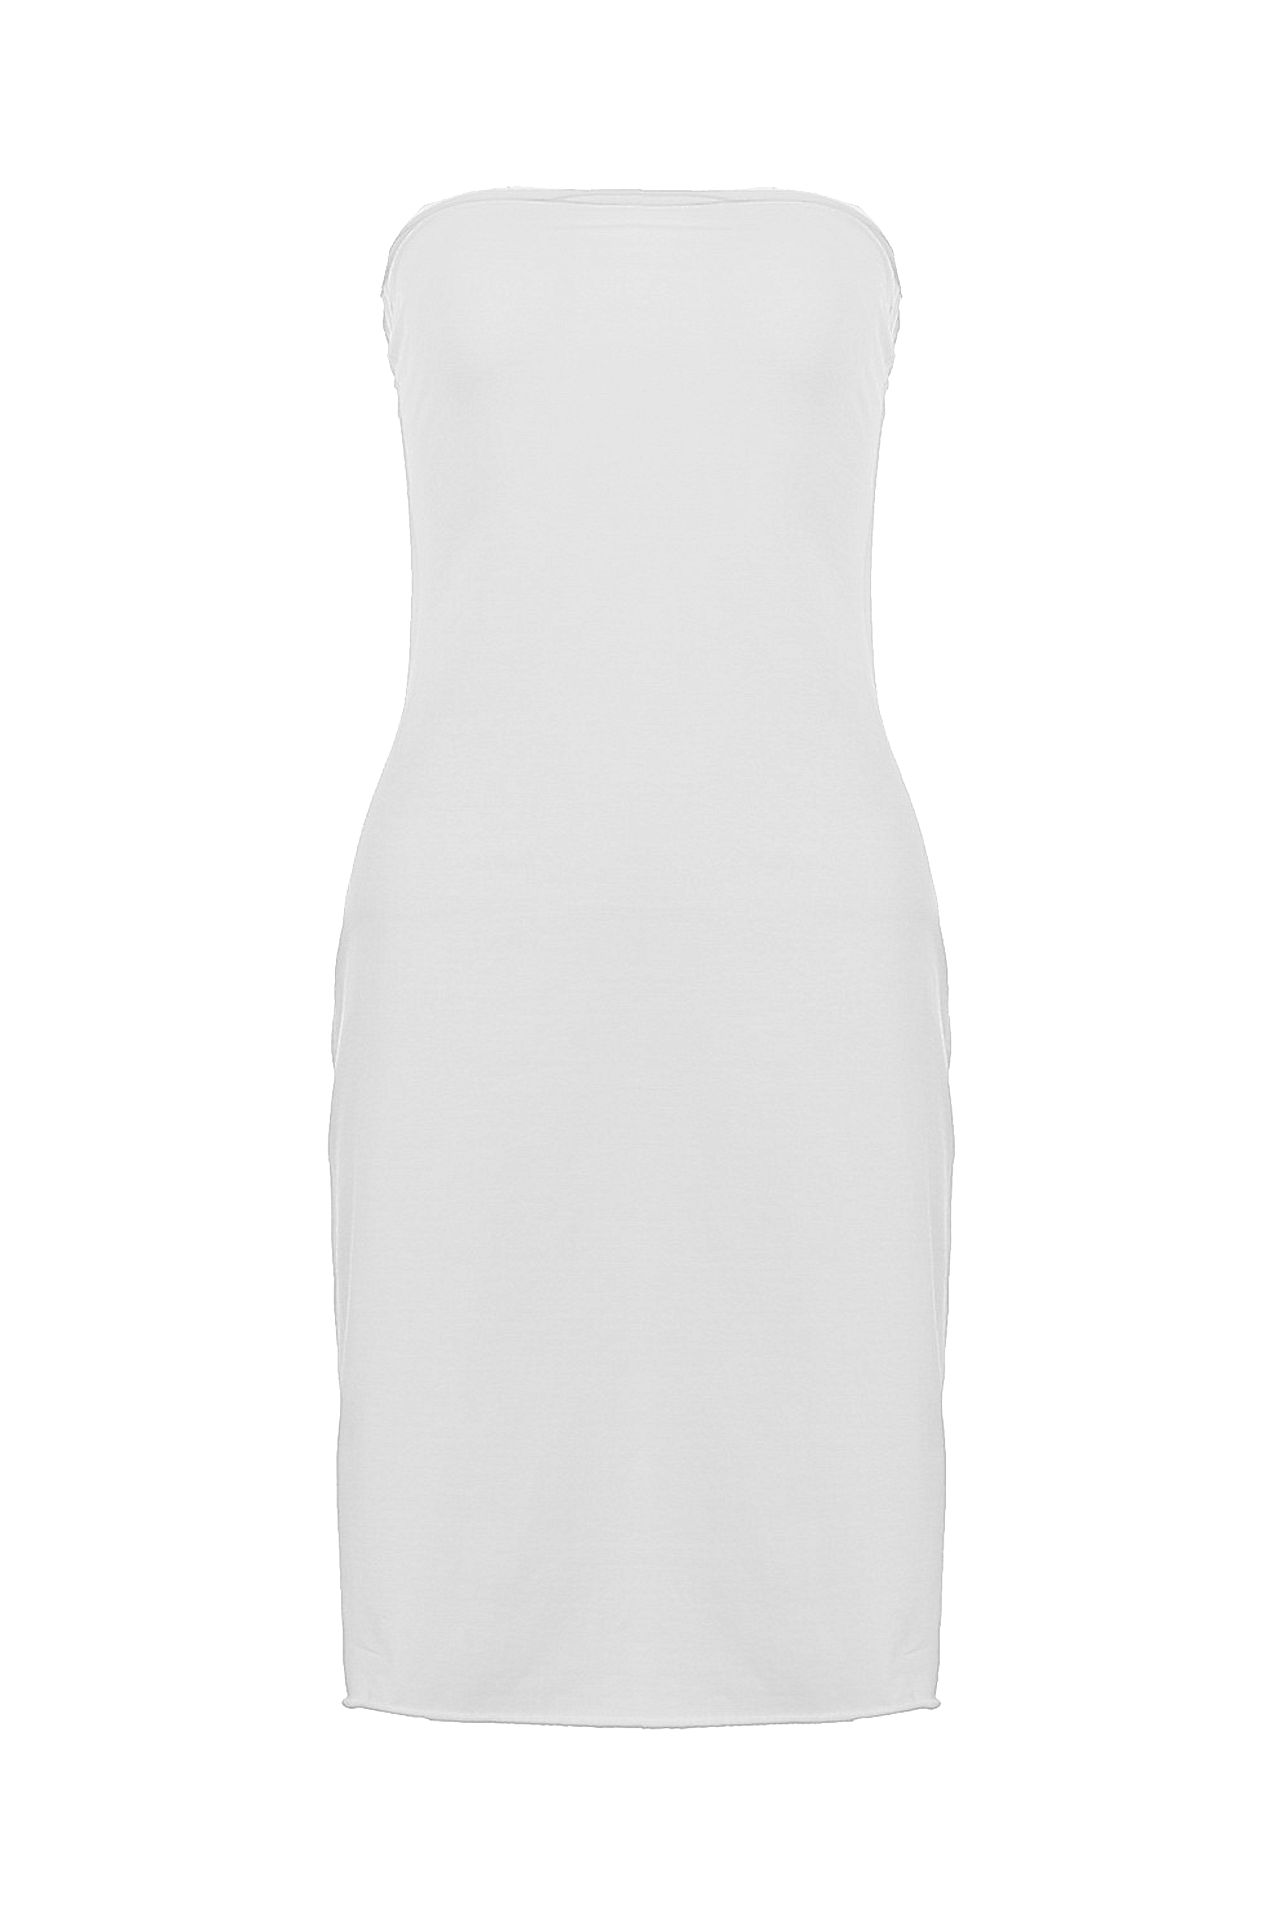 Одежда женская Платье LIVIANA CONTI (L2E510/12.1). Купить за 5450 руб.